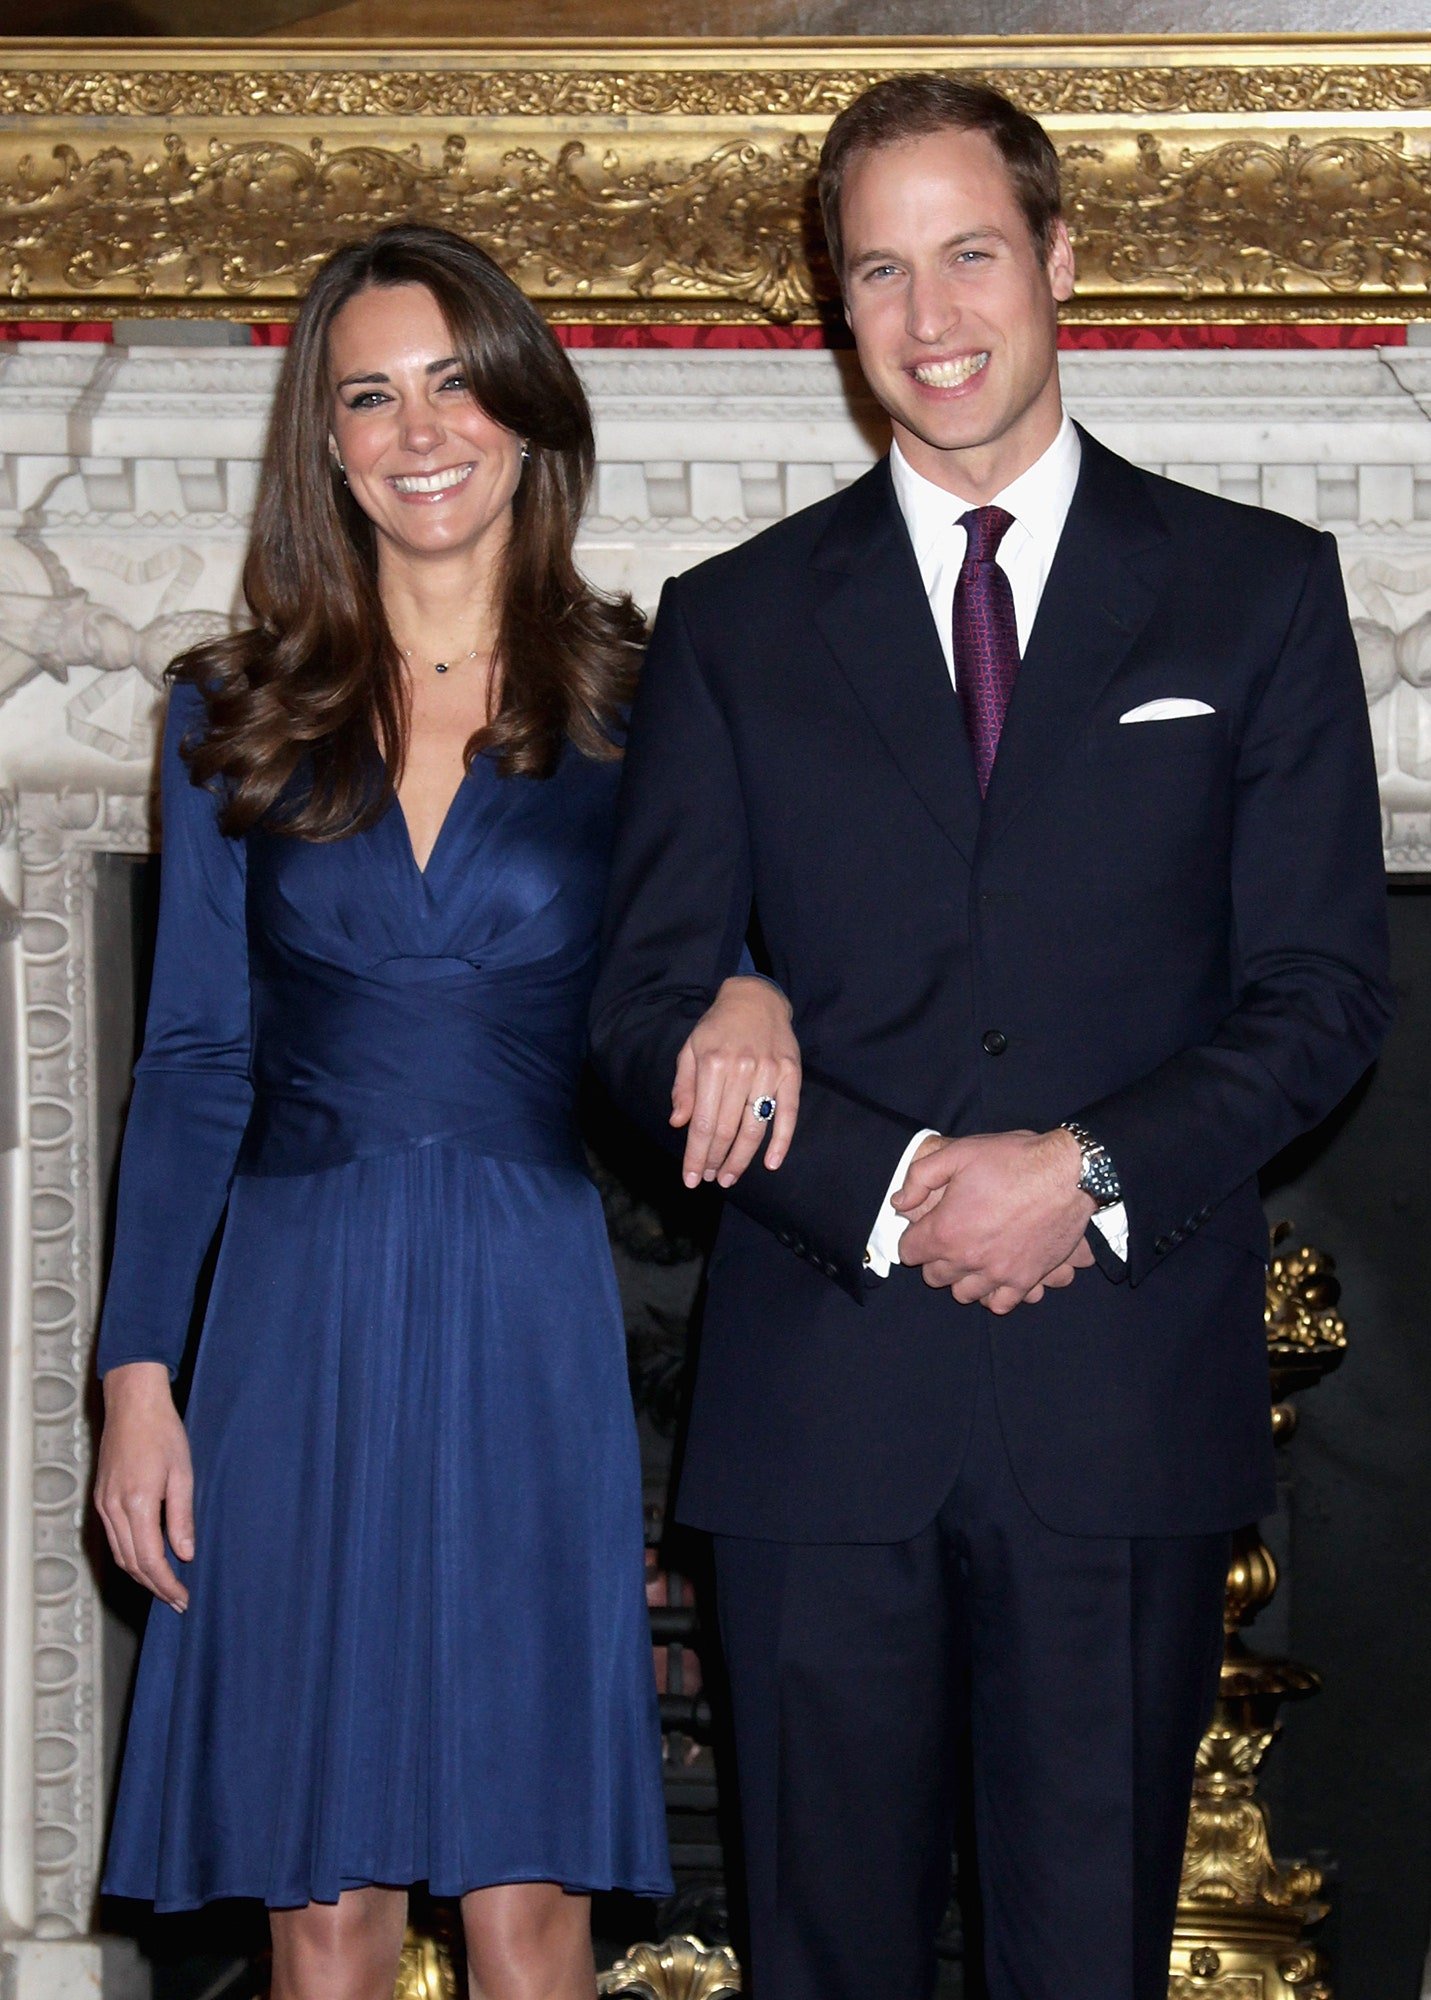 Kate Middleton und Prinz William posieren für Fotos nach der Bestätigung ihrer Verlobung am 16. November 2010 | Quelle: Getty Images